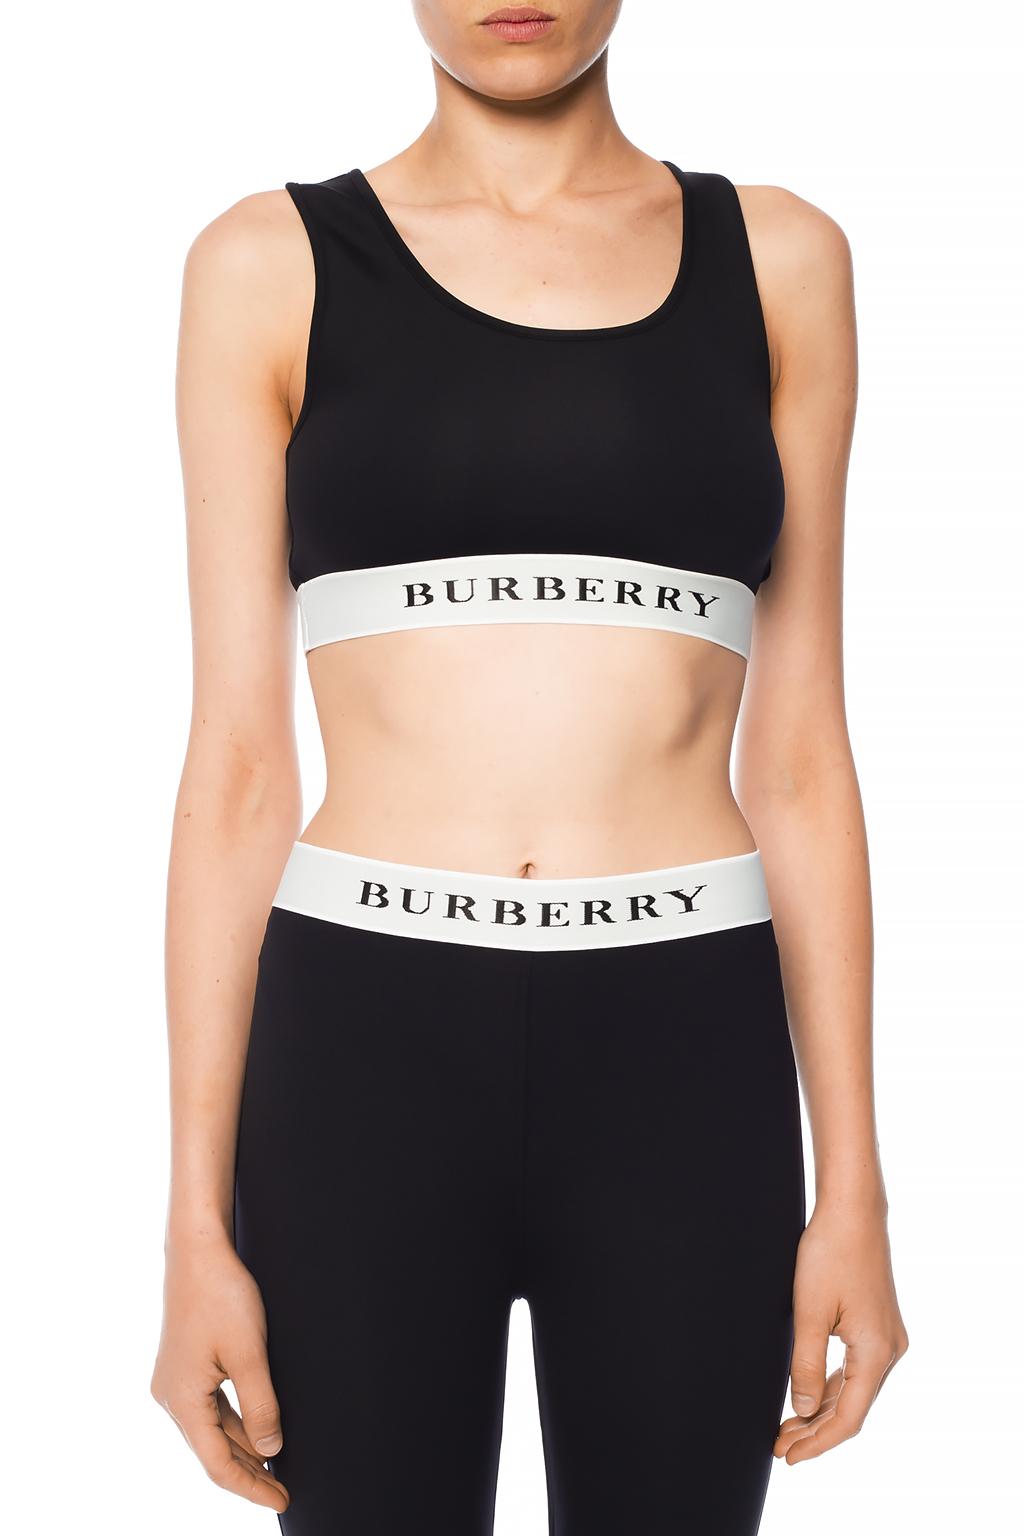 Black Sports bra with logo Burberry - Vitkac GB